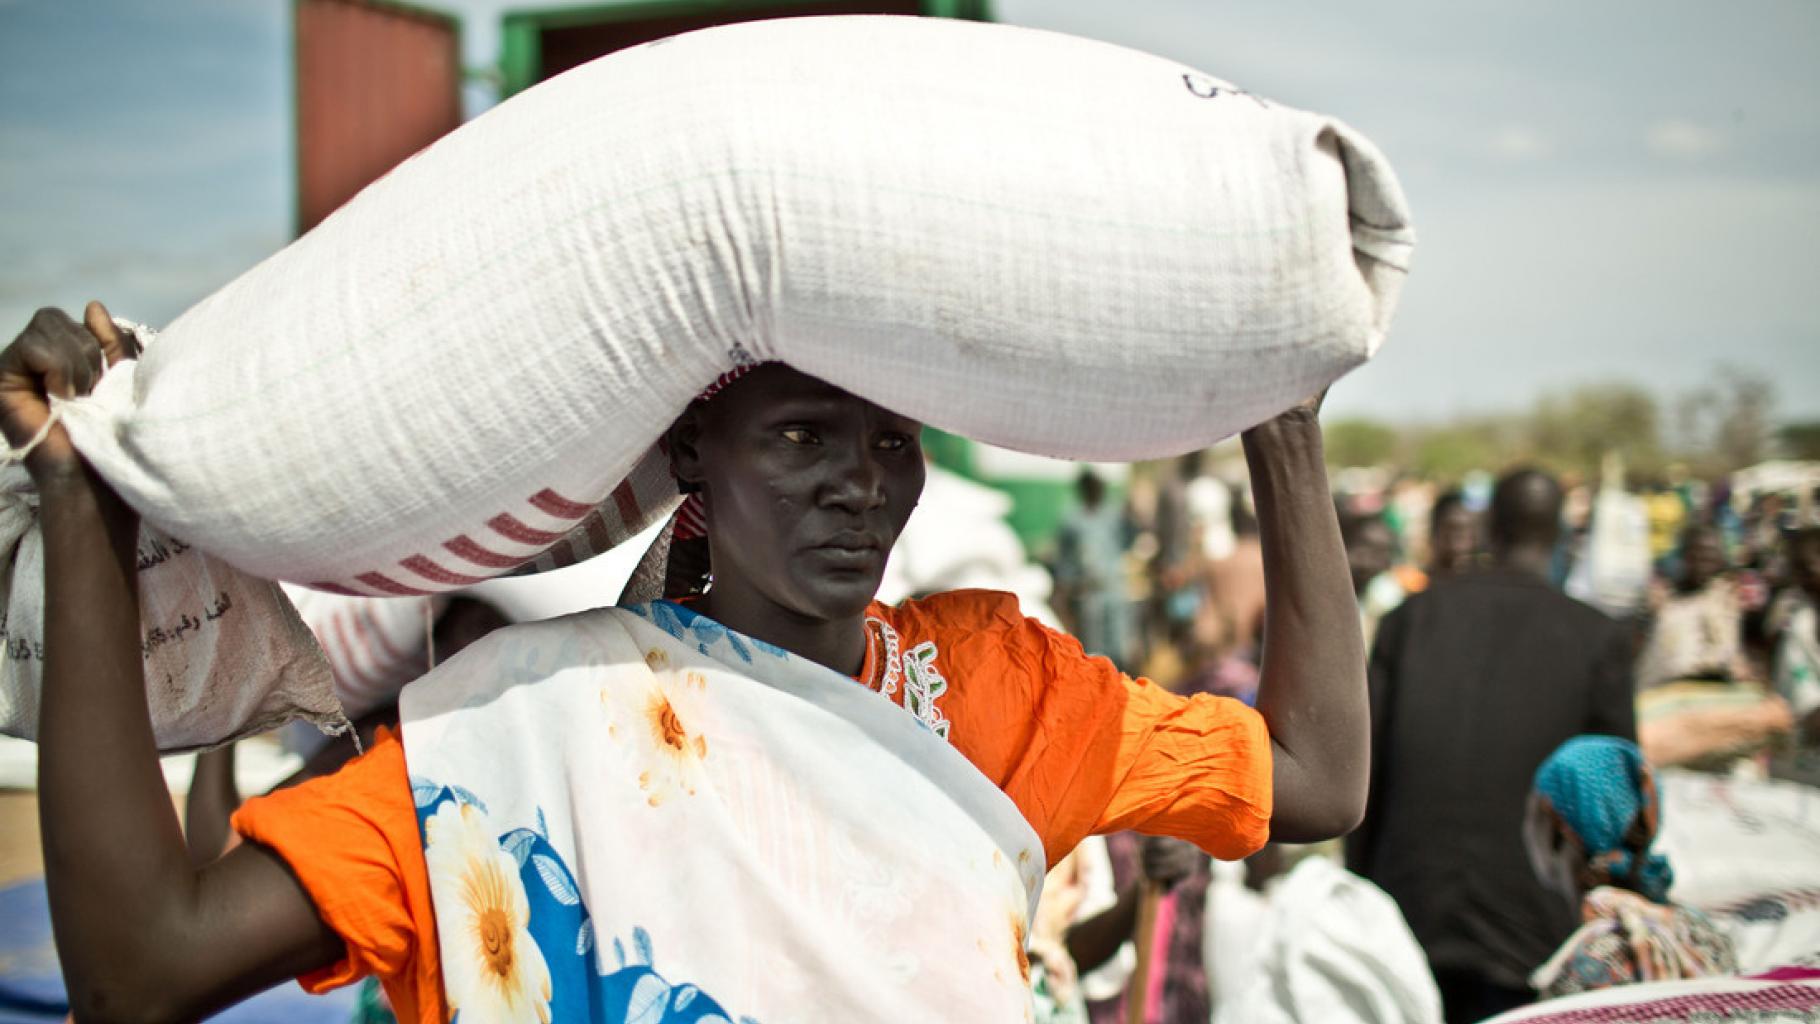 Frau aus dem Südsudan transportiert einen gefüllten Sack auf dem Kopf